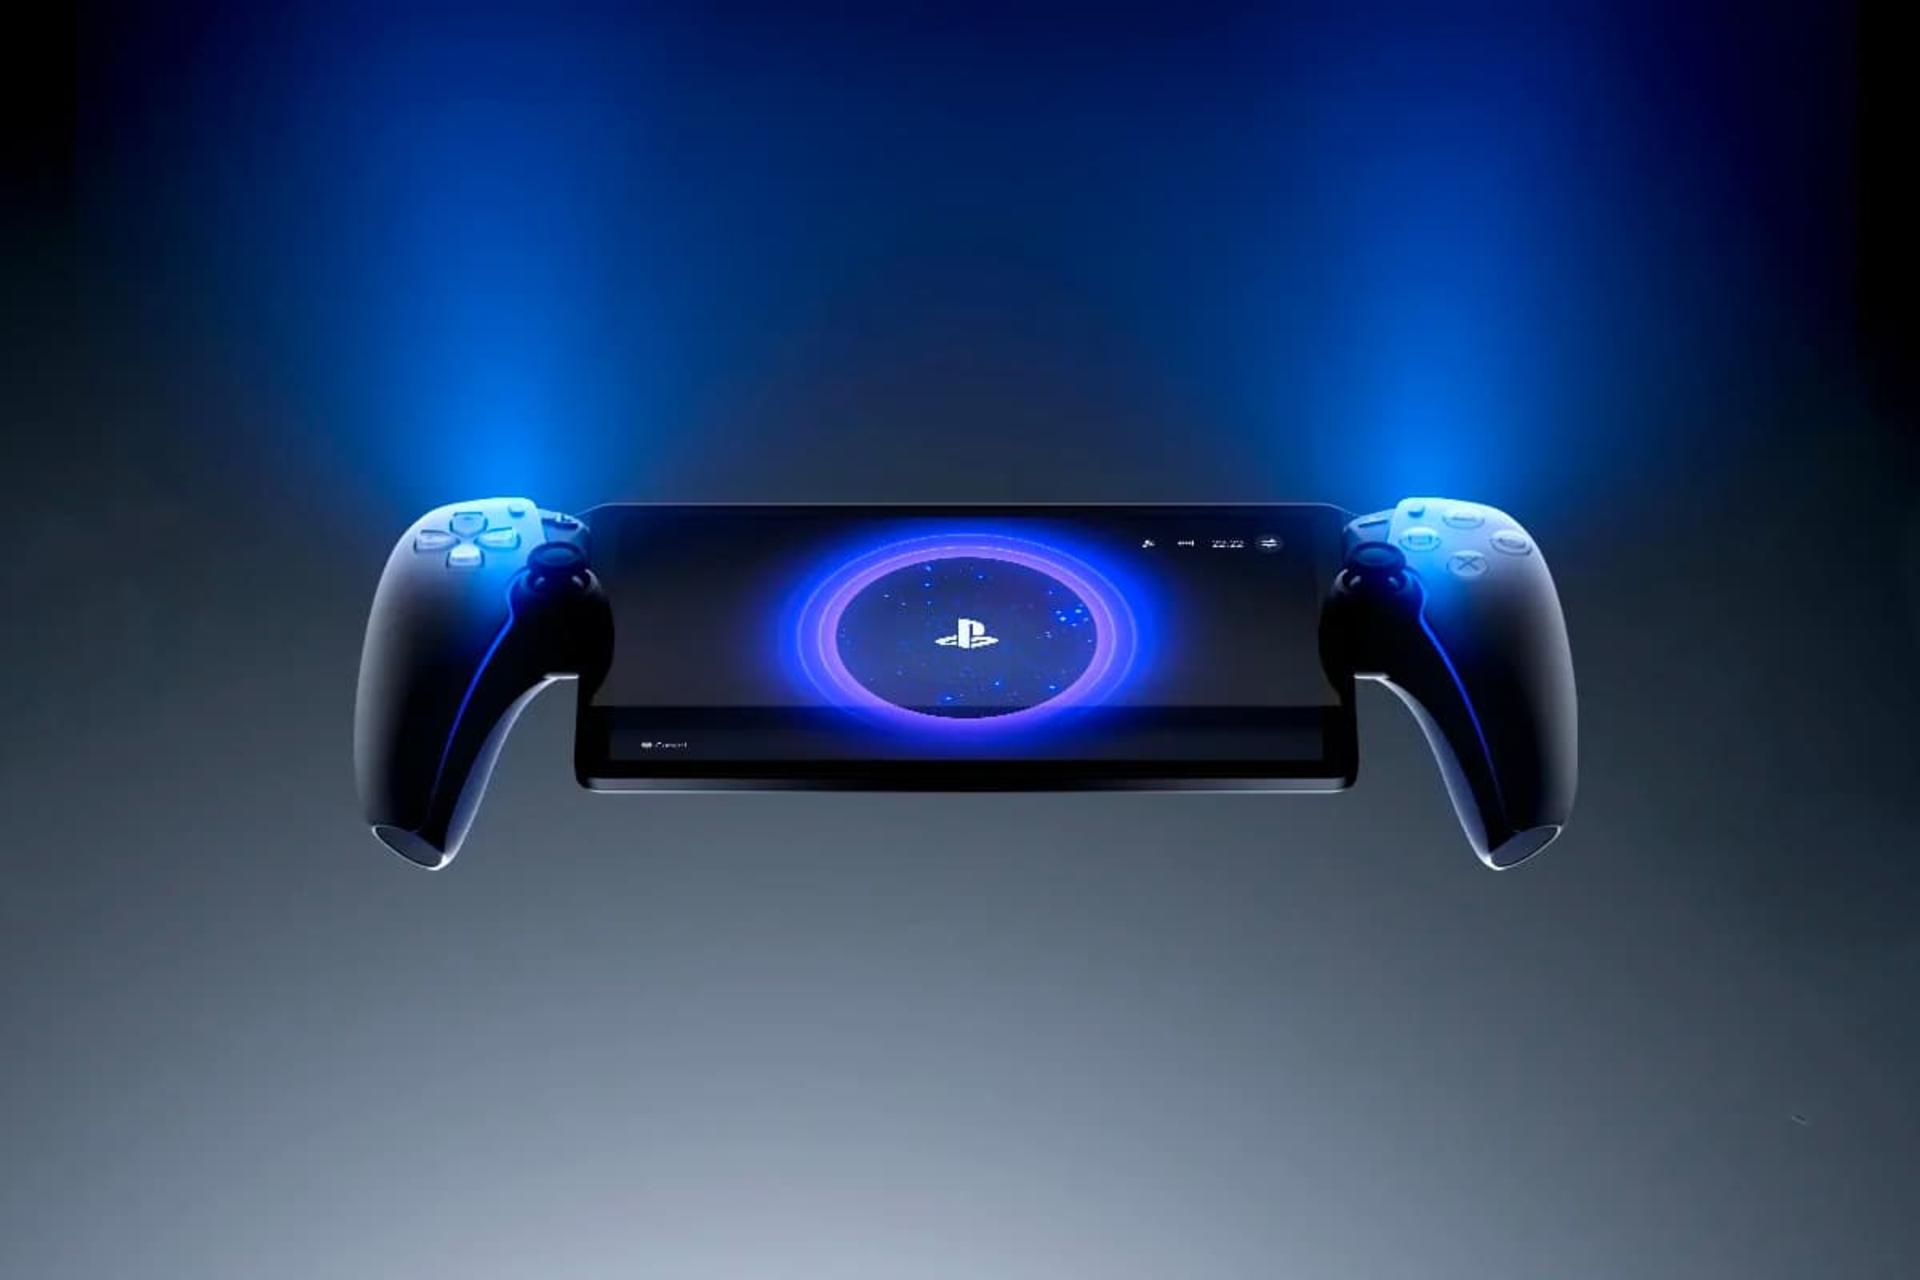 کنسول پلی استیشن پورتال / PlayStation Portal سونی از نمای زیرین